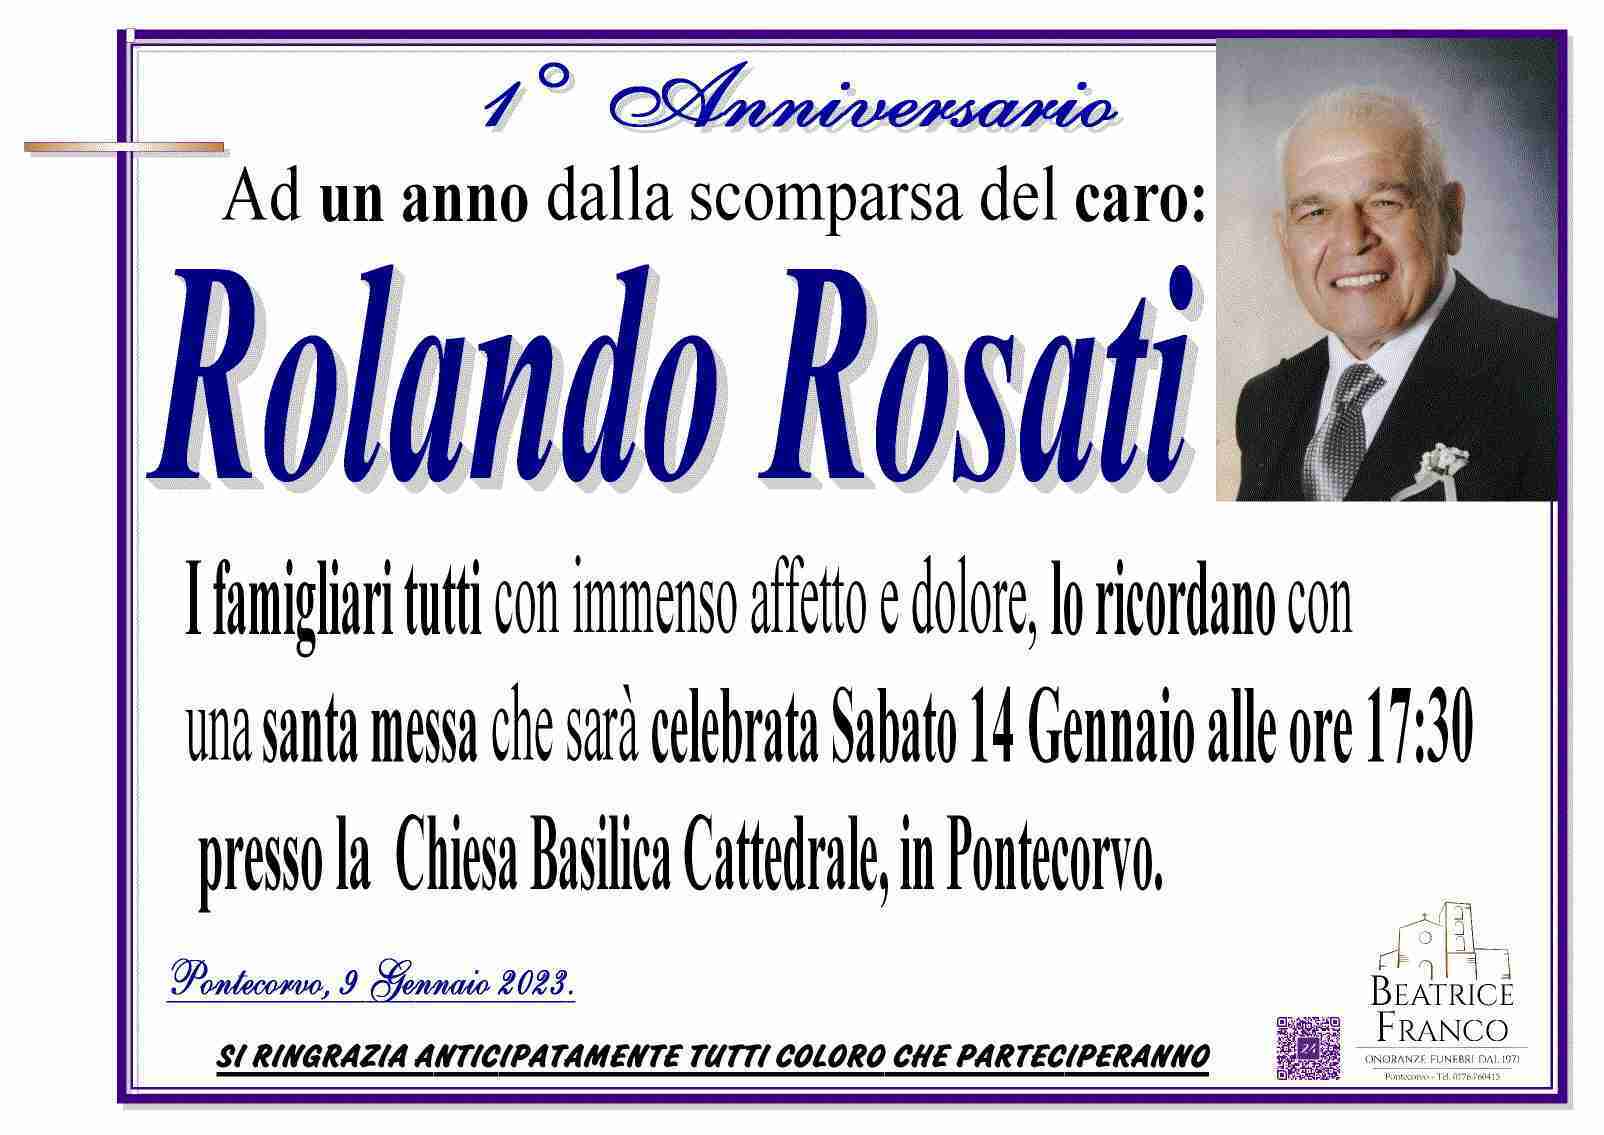 Rolando Rosati